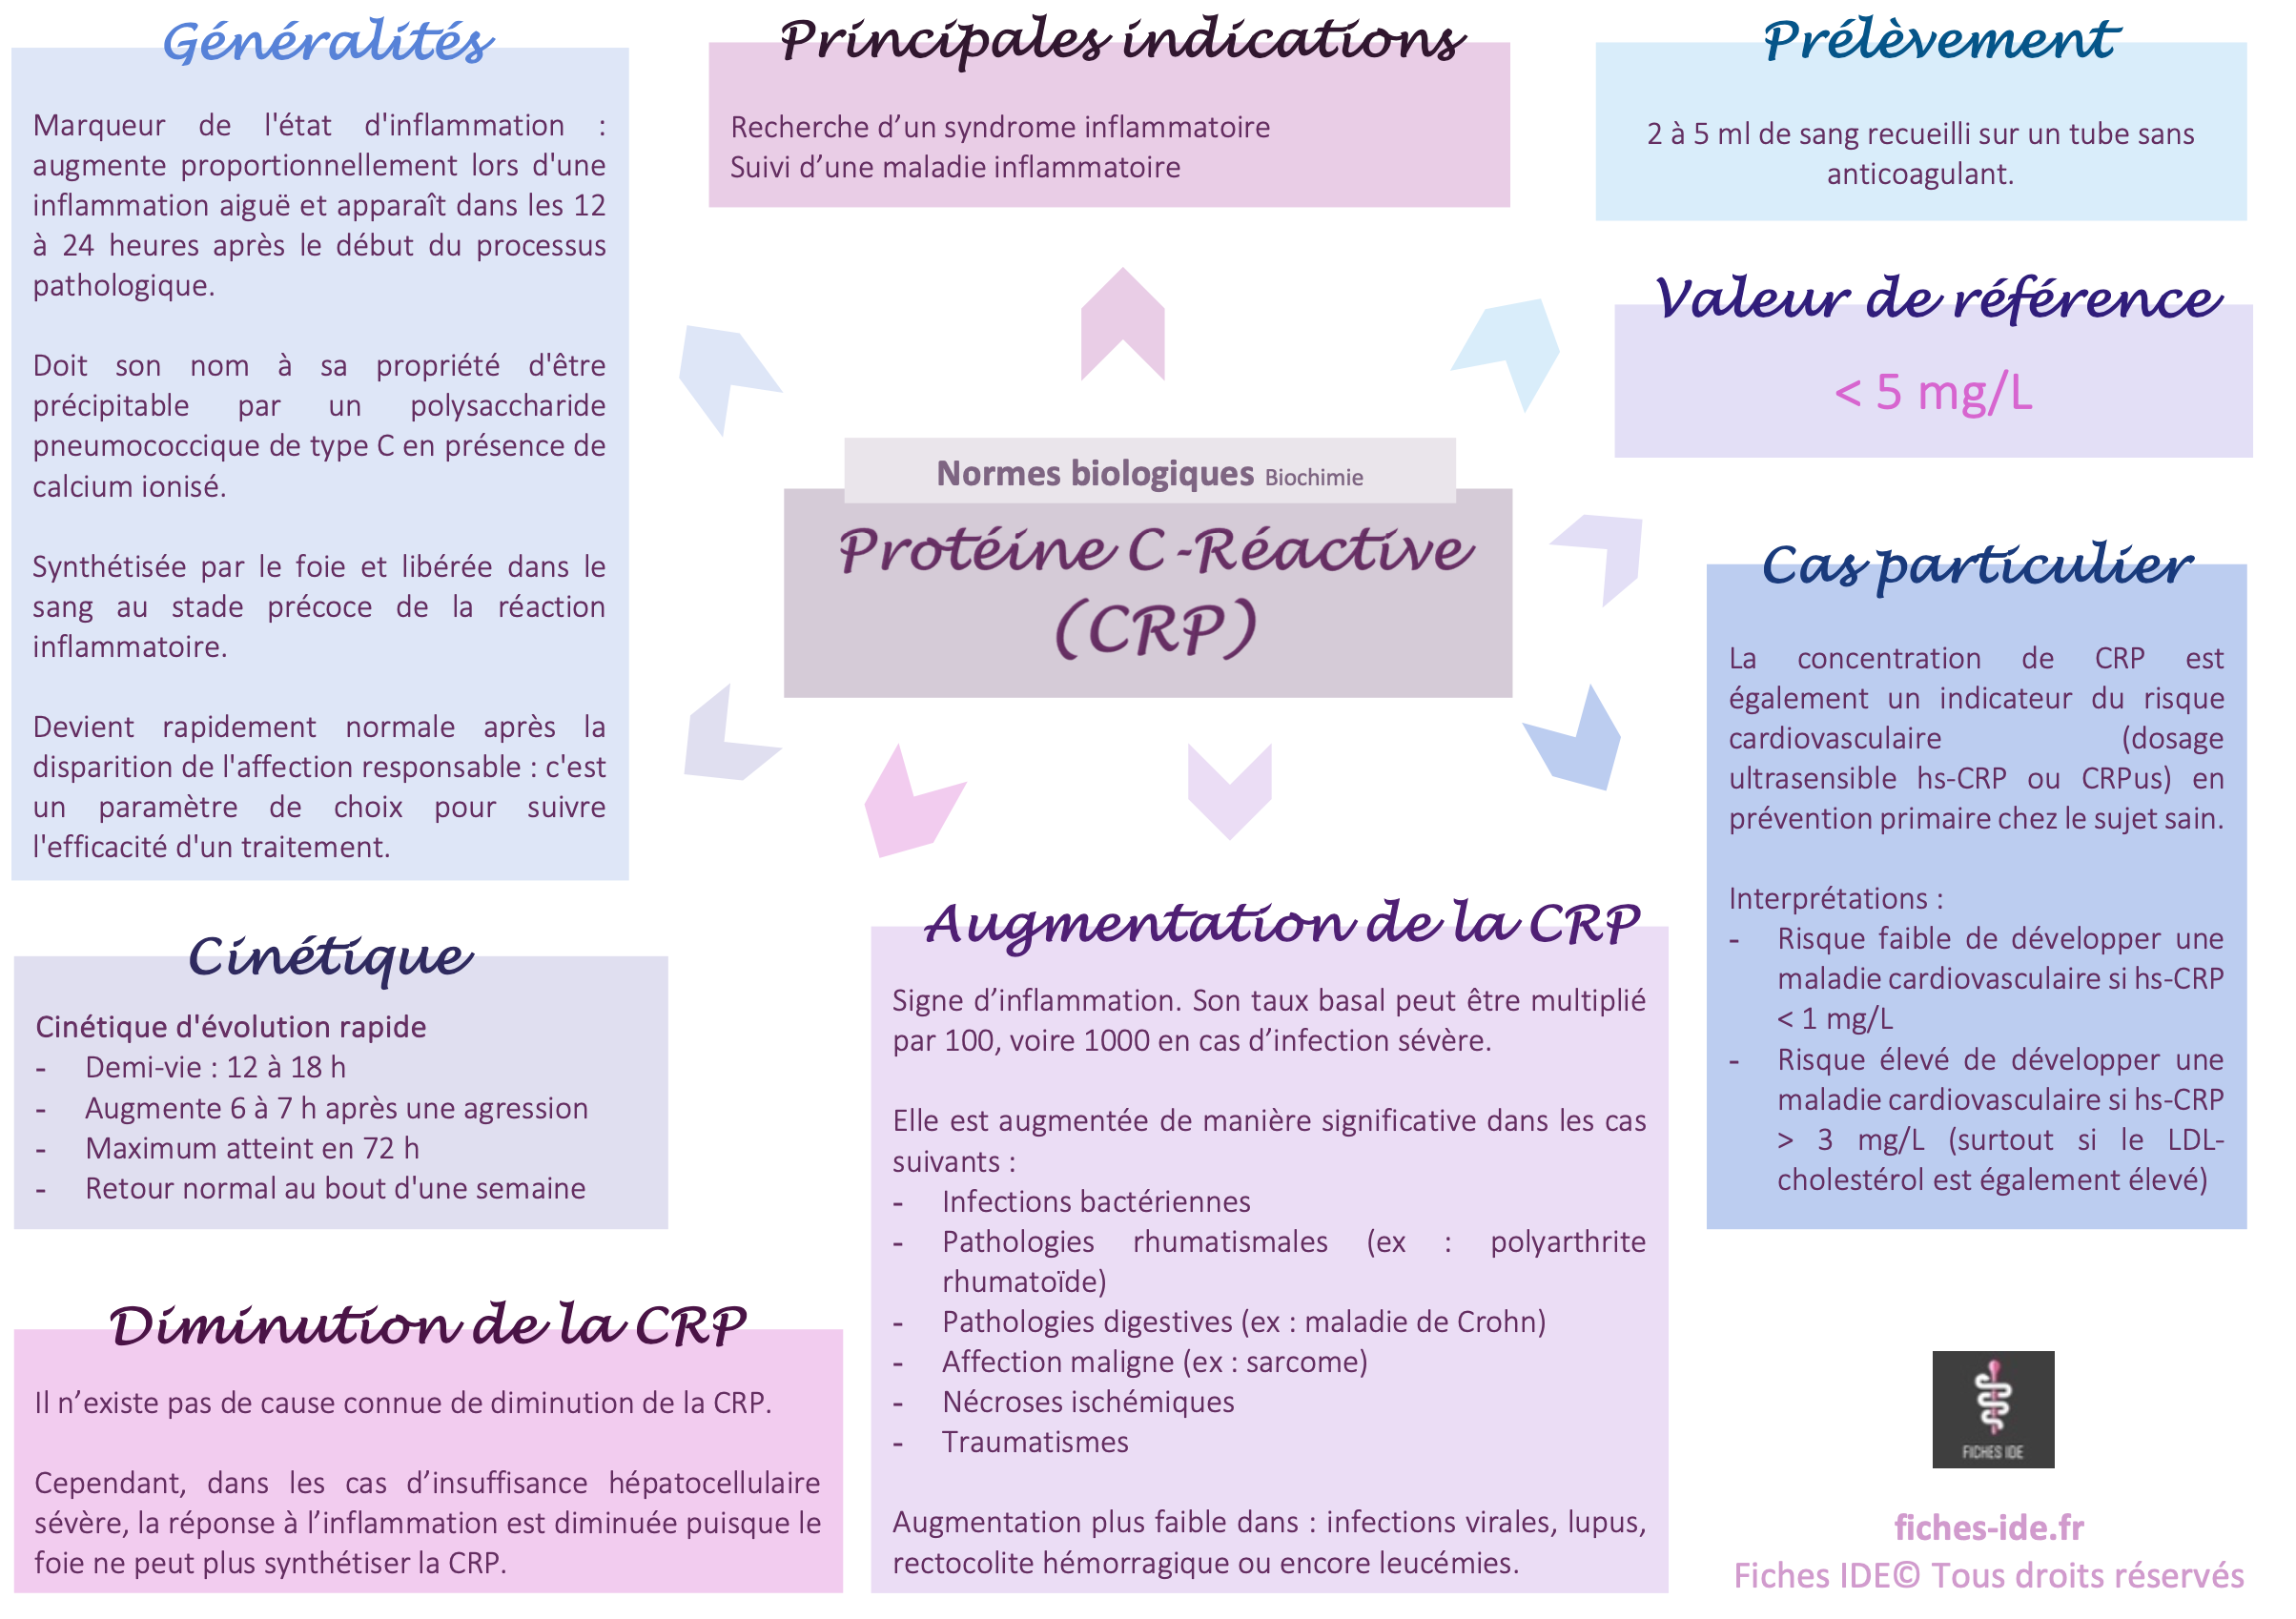 Protéine C-réactive (CRP) - Fiches IDE